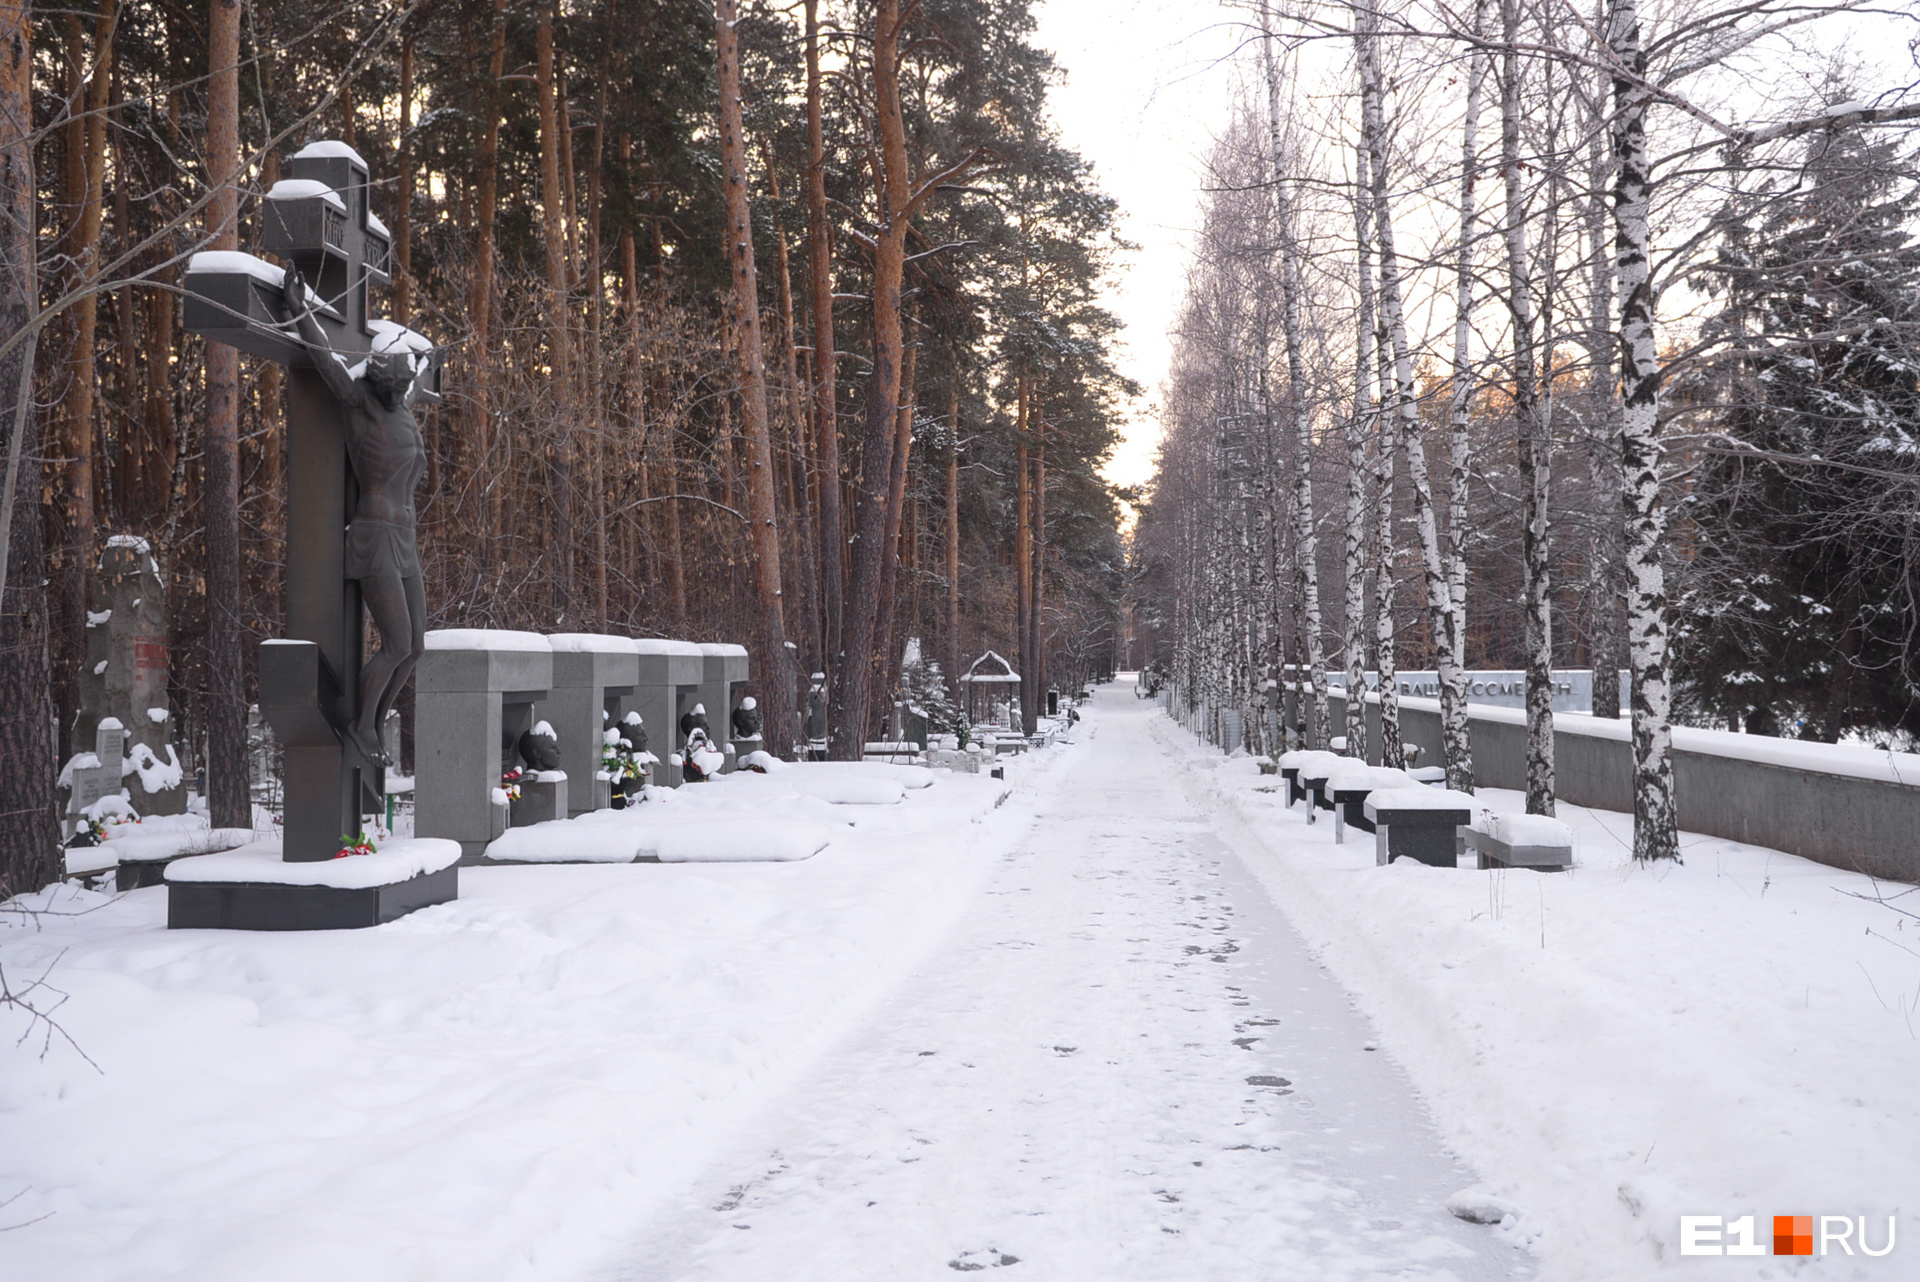 Многие называют это место на Широкореченском кладбище «аллеей 90-х». Некоторые памятники создал известный скульптор Геворг Геворкян